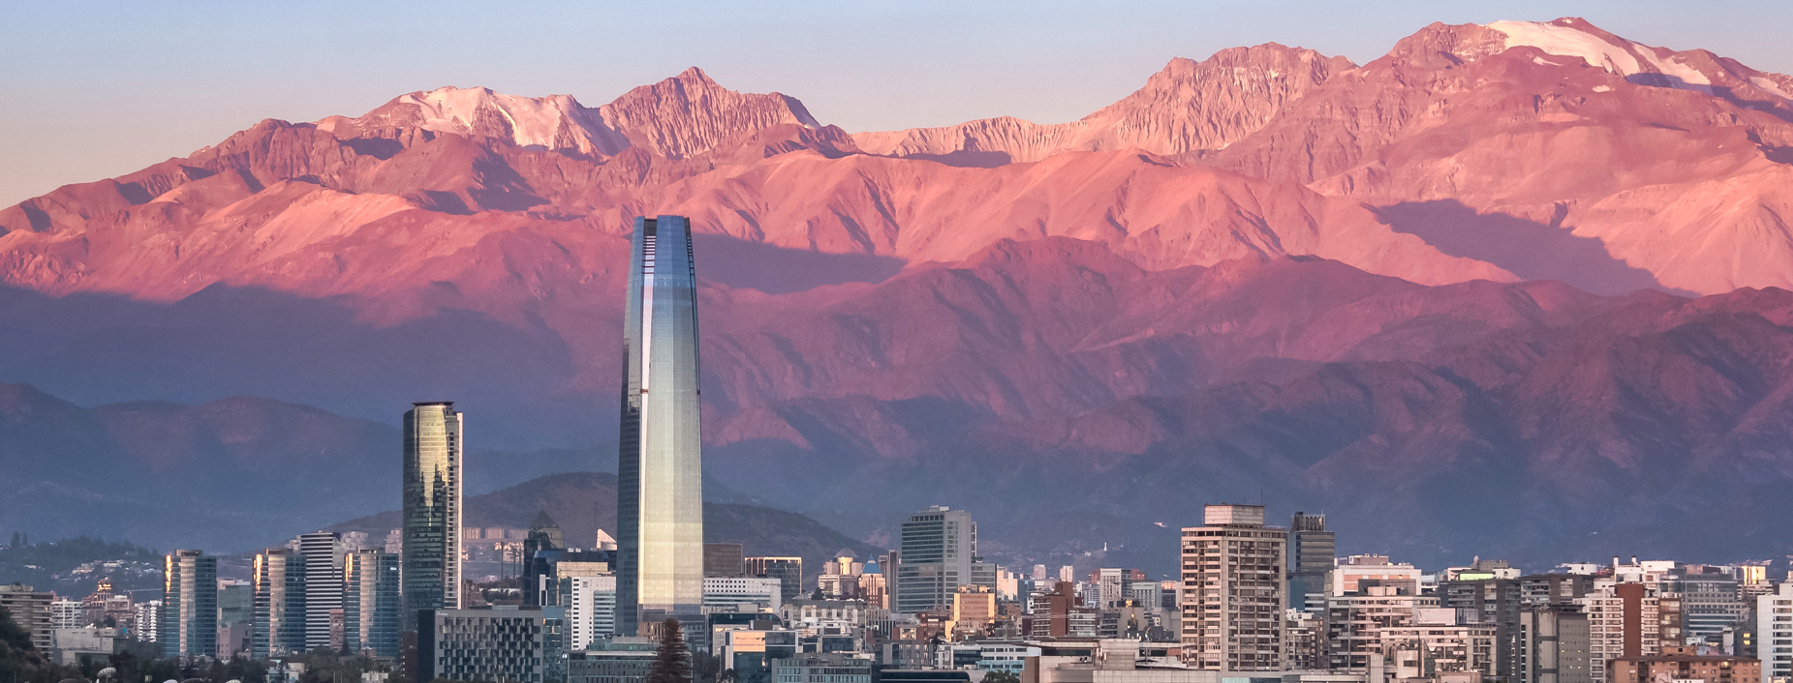 Santiago de Chile.png